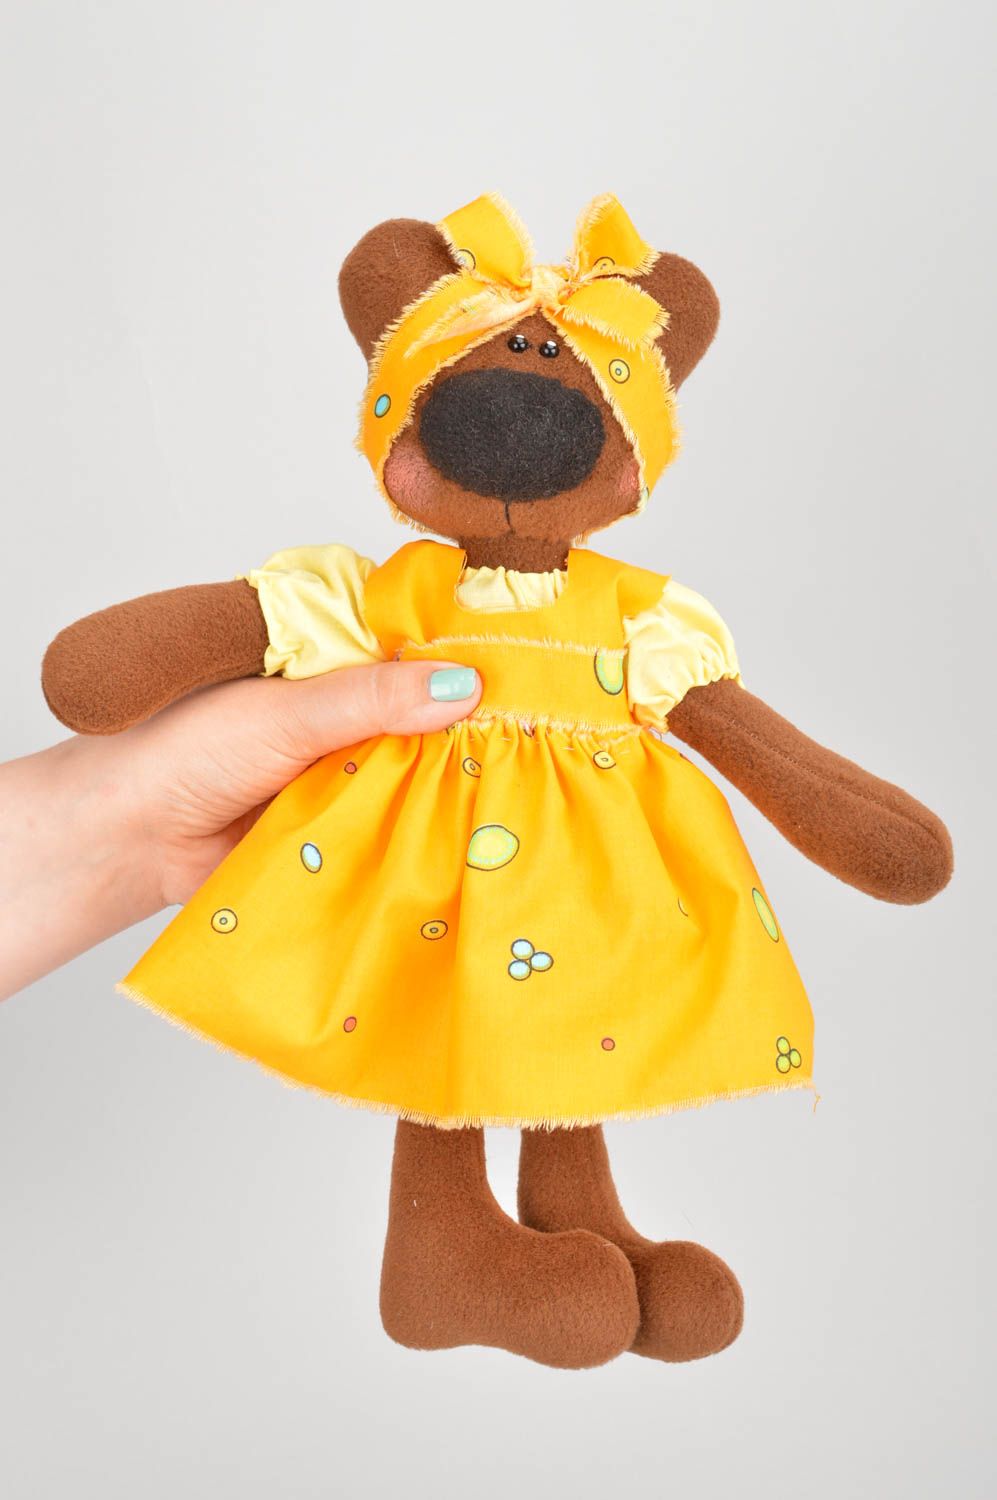 Kuscheltier Bär handgemacht im Kleid weiches Kuscheltier Geschenk für Kind schön foto 3